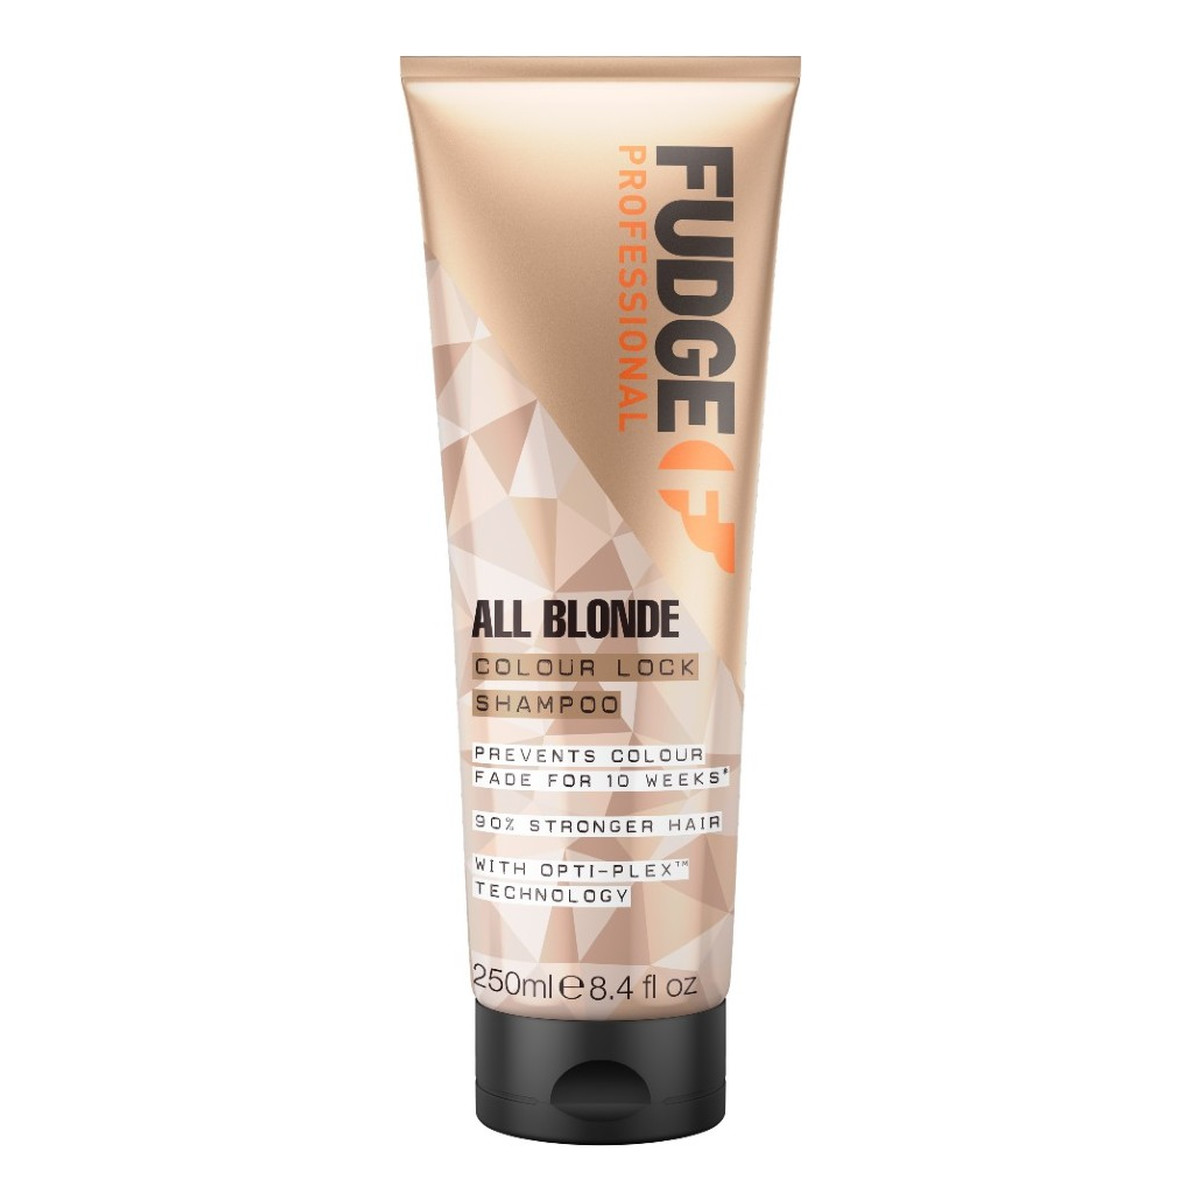 Fudge All blonde colour lock shampoo szampon do włosów blond chroniący przed blaknięciem koloru 250ml